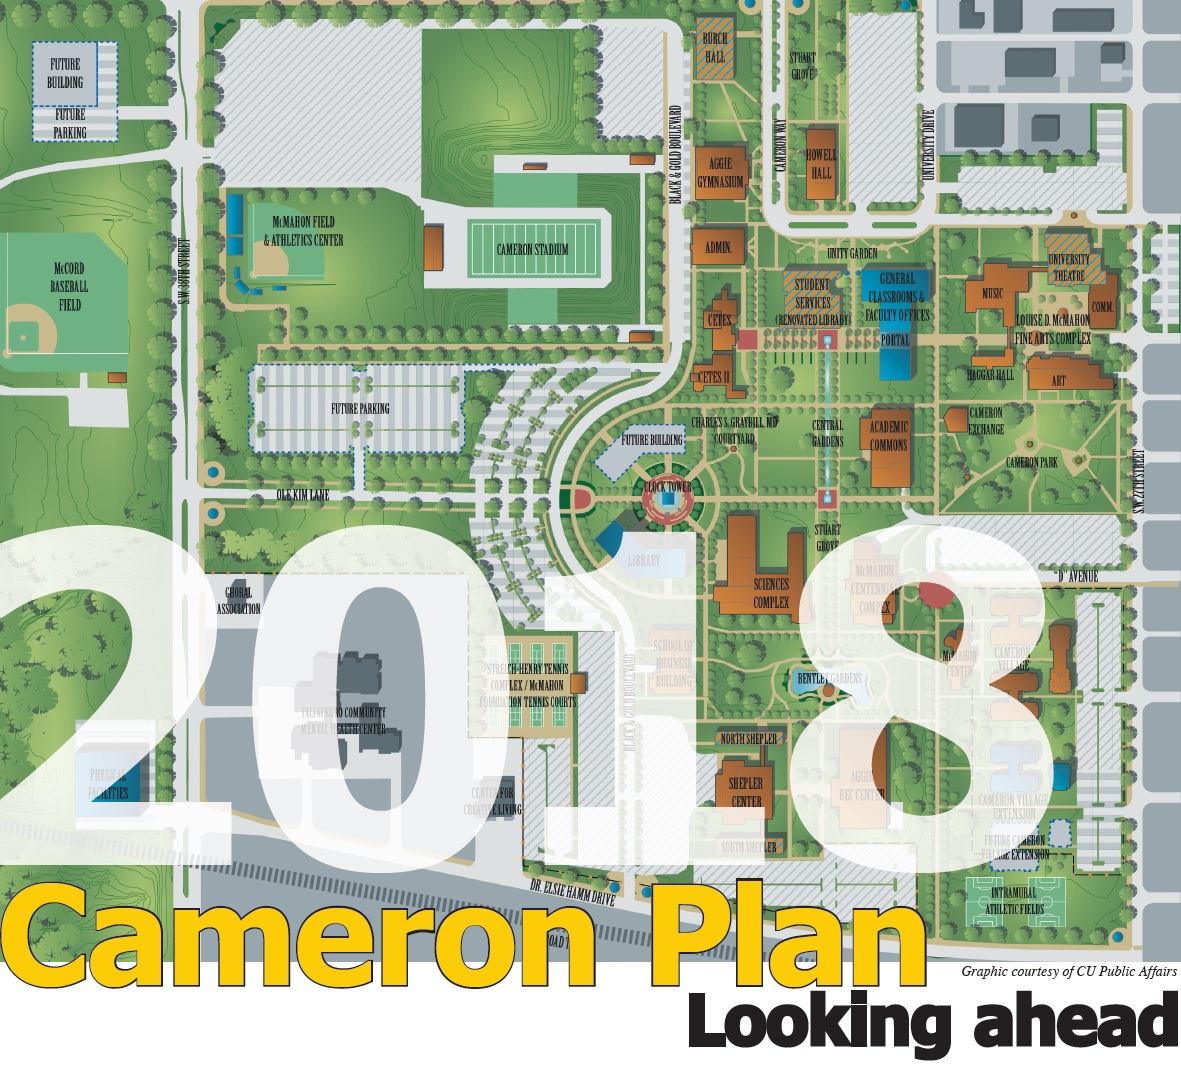 2018 Cameron Plan: Looking ahead